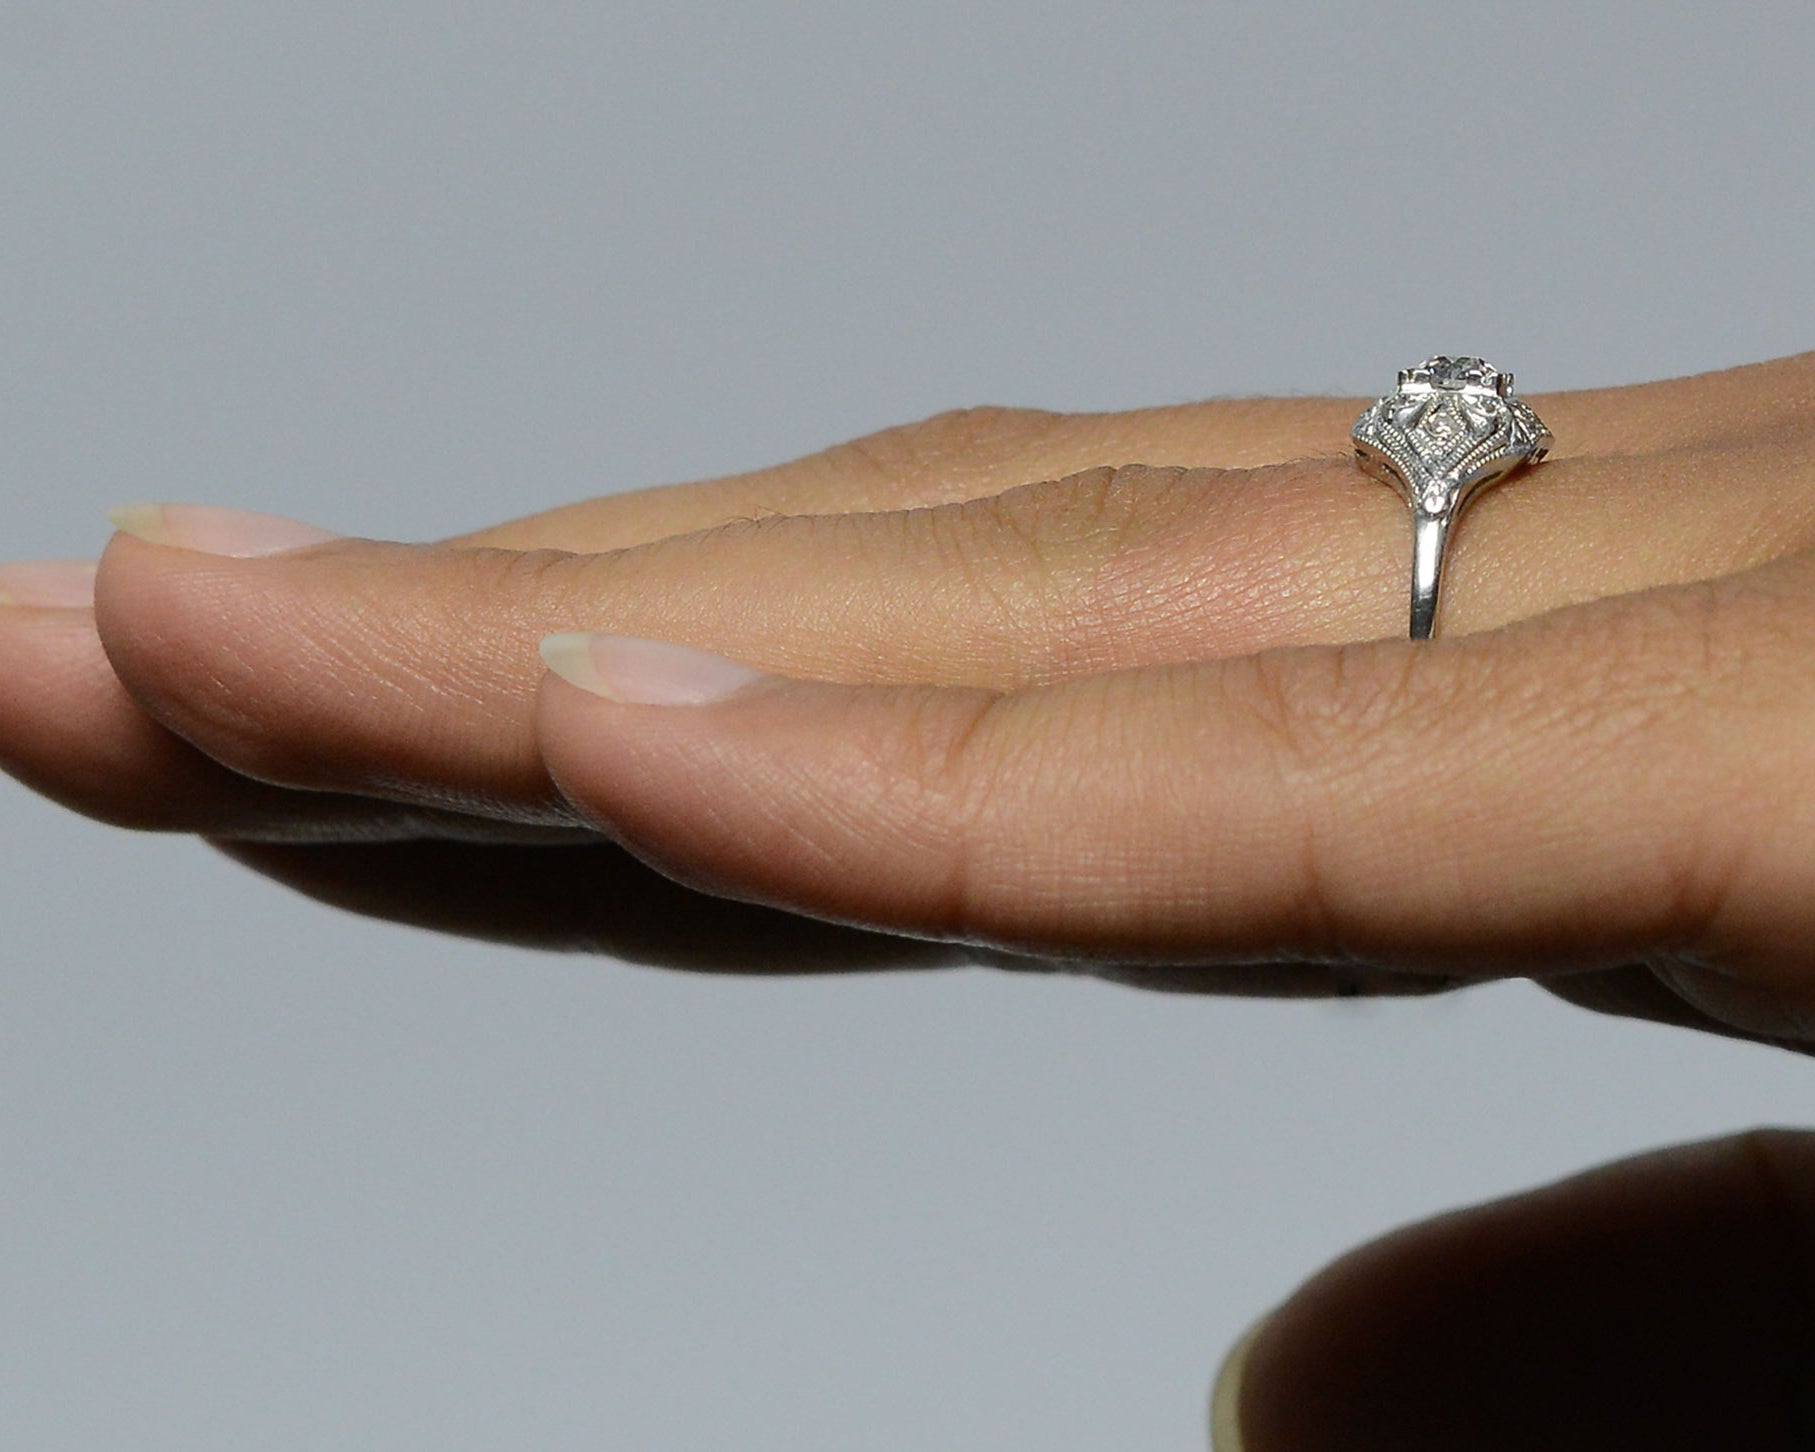 A fleur de lis pattern diamonds ring.